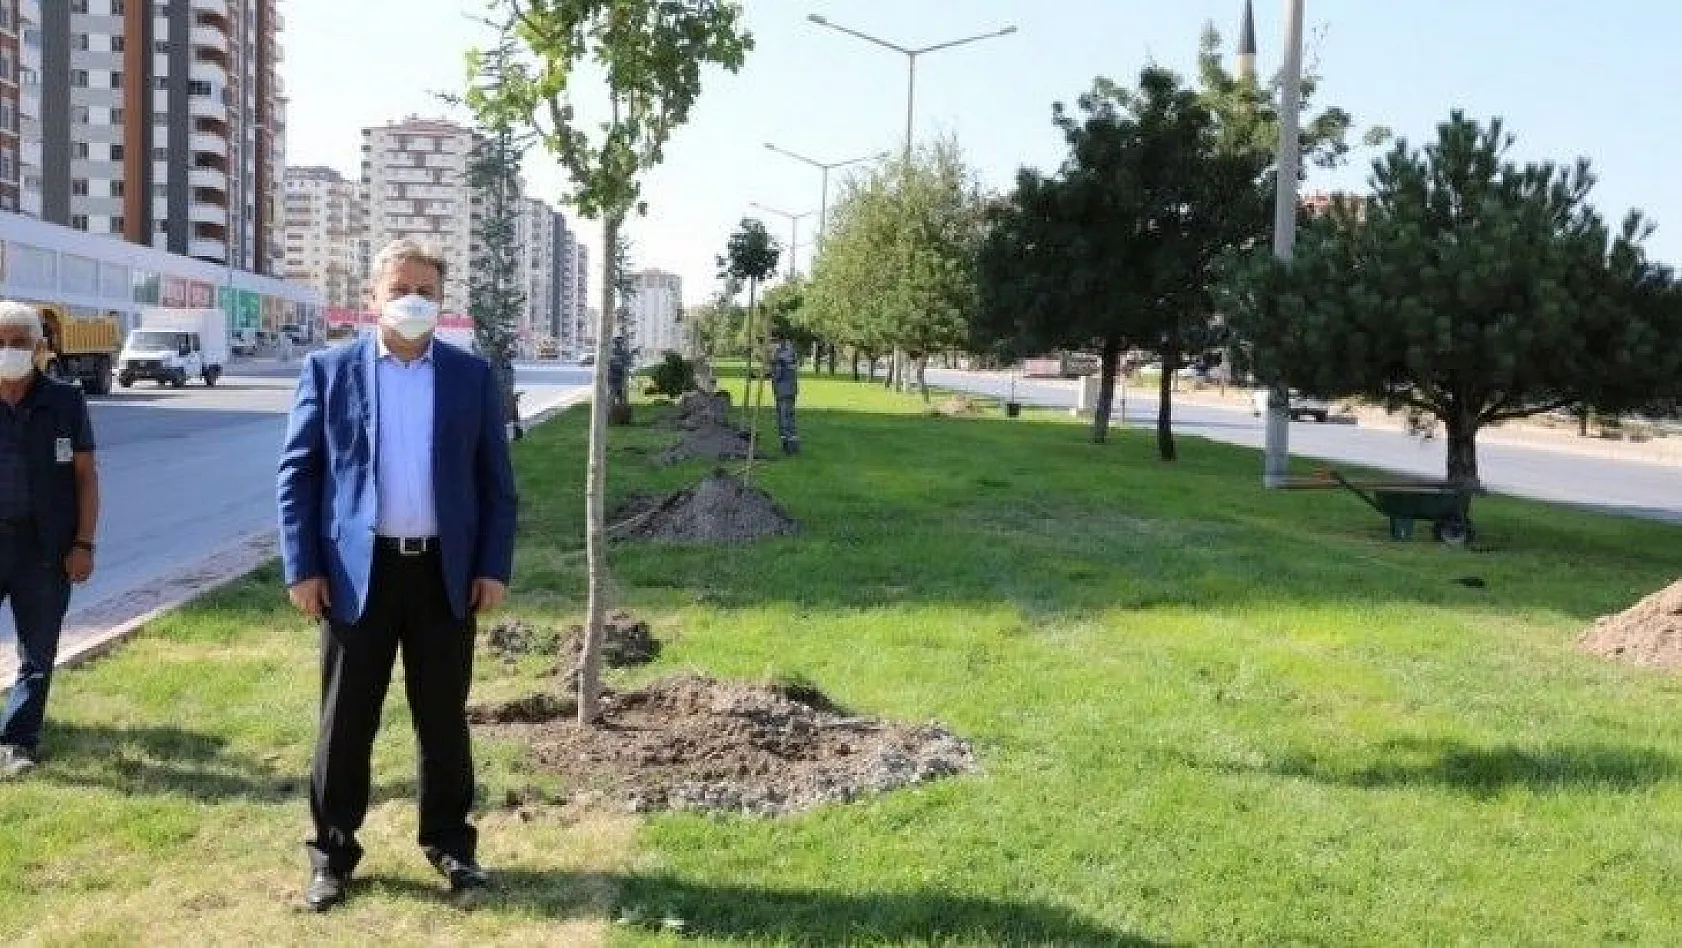 Palancıoğlu: 'Daha yeşil bir Melikgazi için fidan değil ağaç diktik'